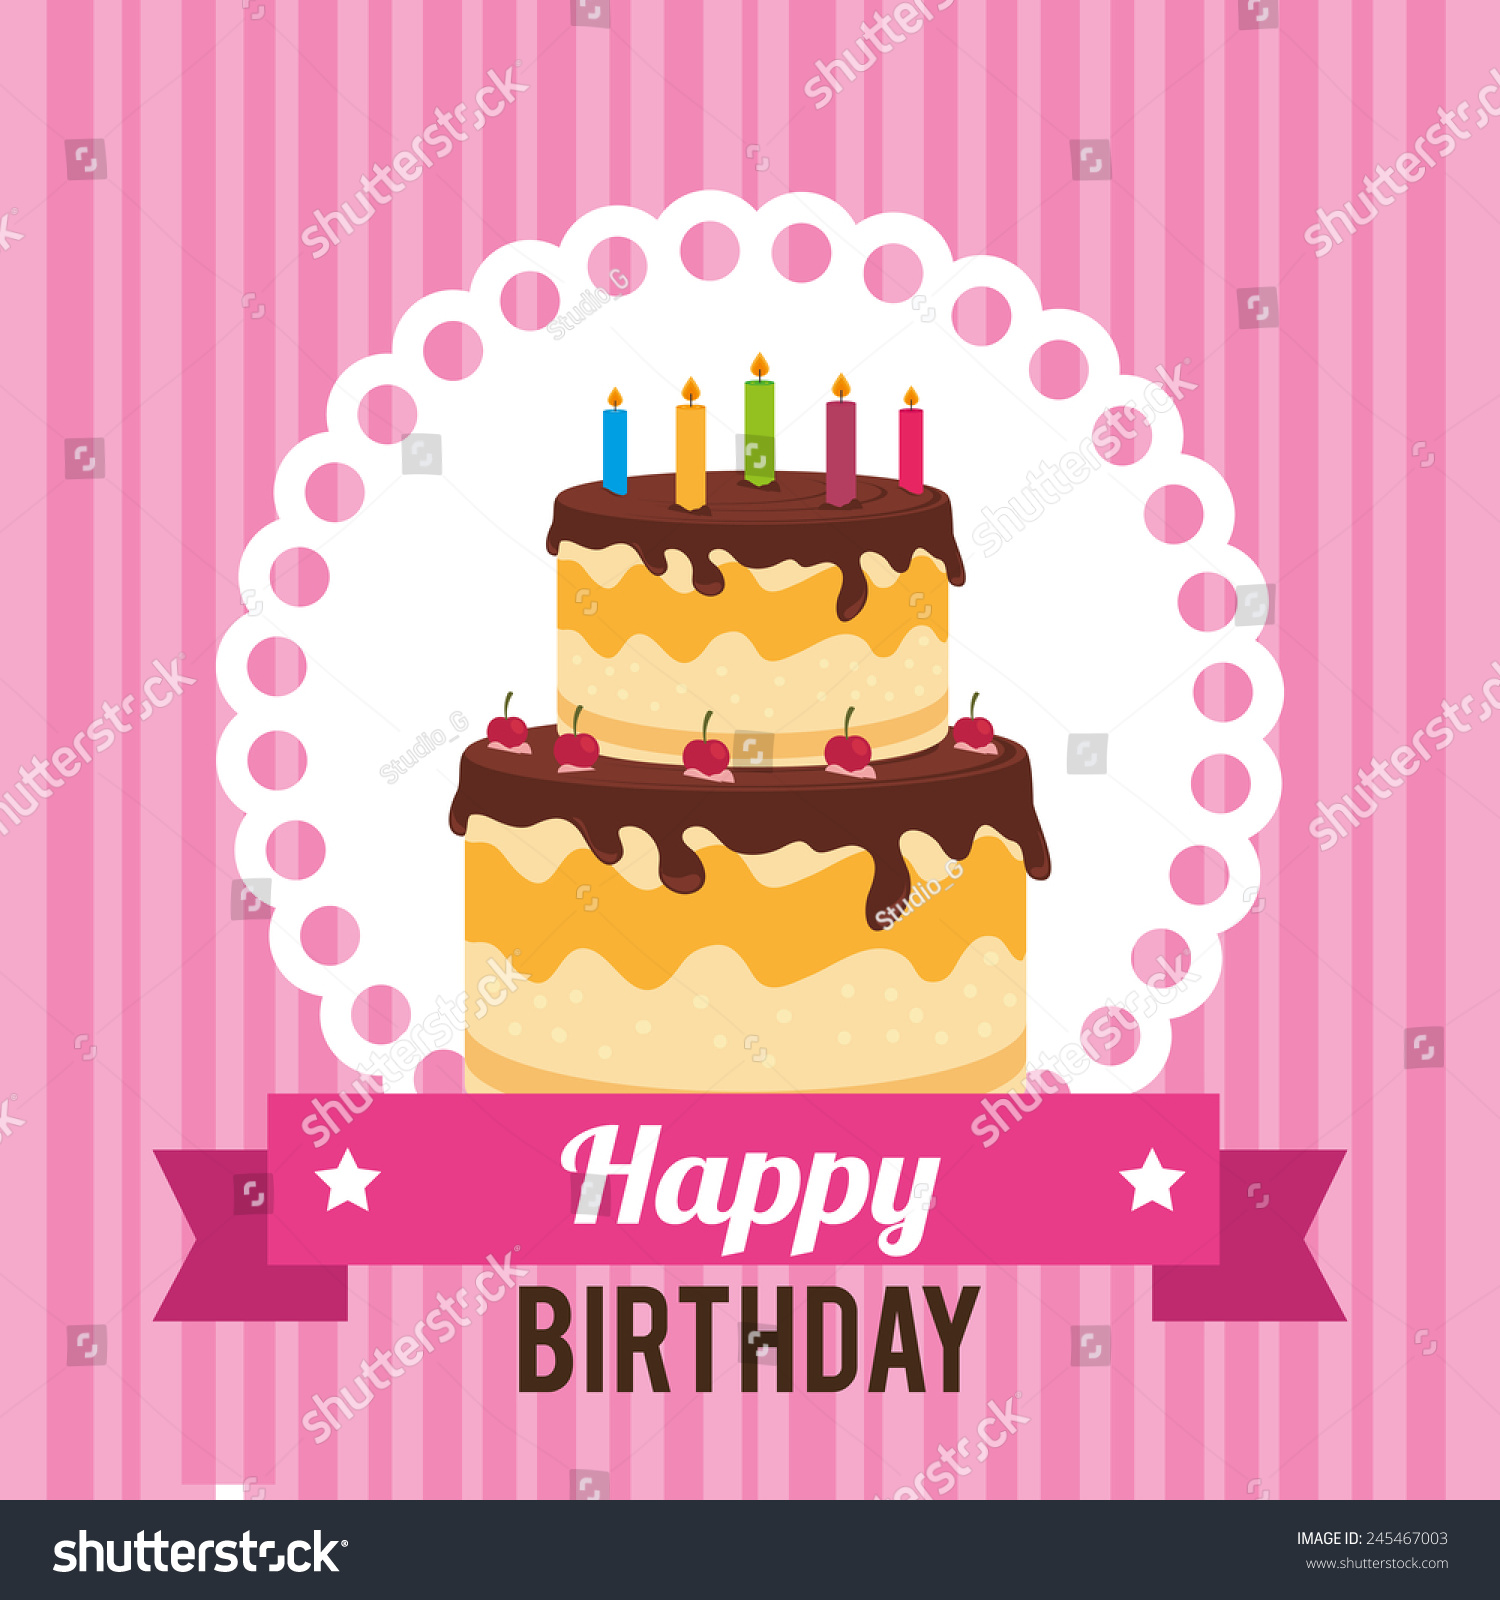 Birthday Card Design, Vector Illustration. - 245467003 : Shutterstock